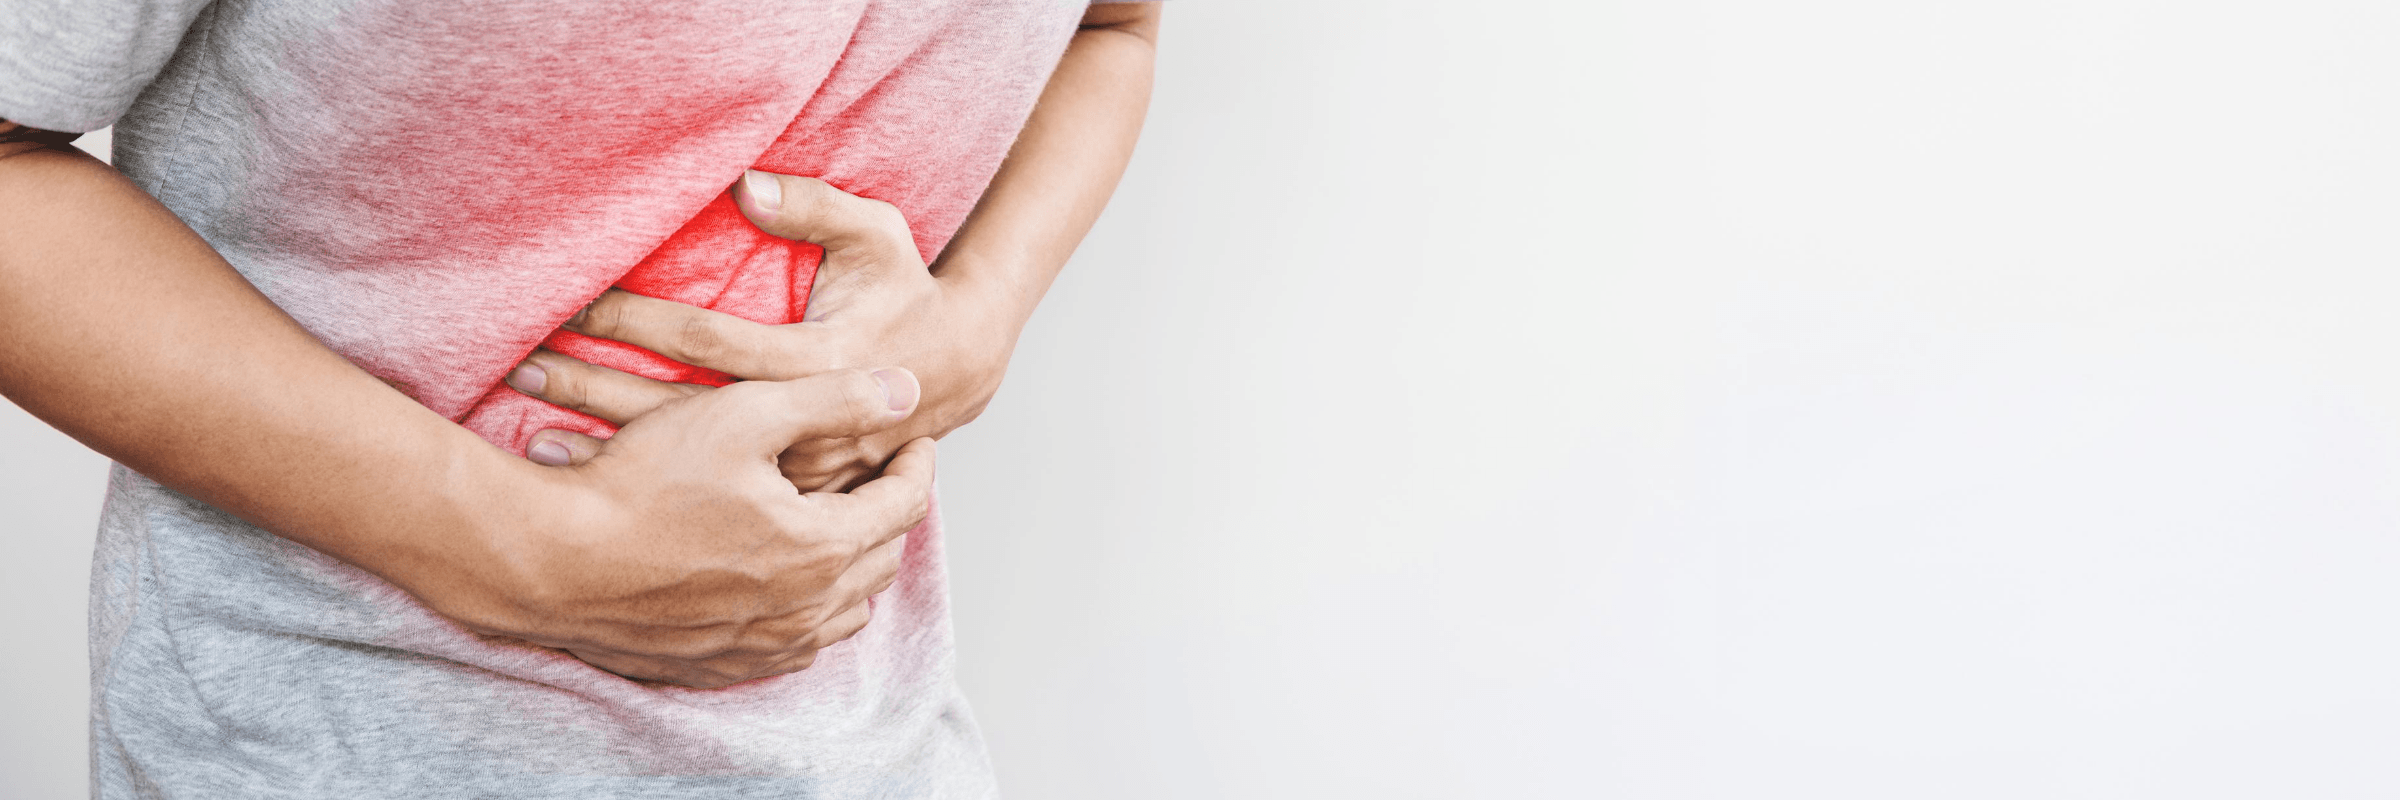 Syndrome des fuites intestinales - Quand votre intestin fuit